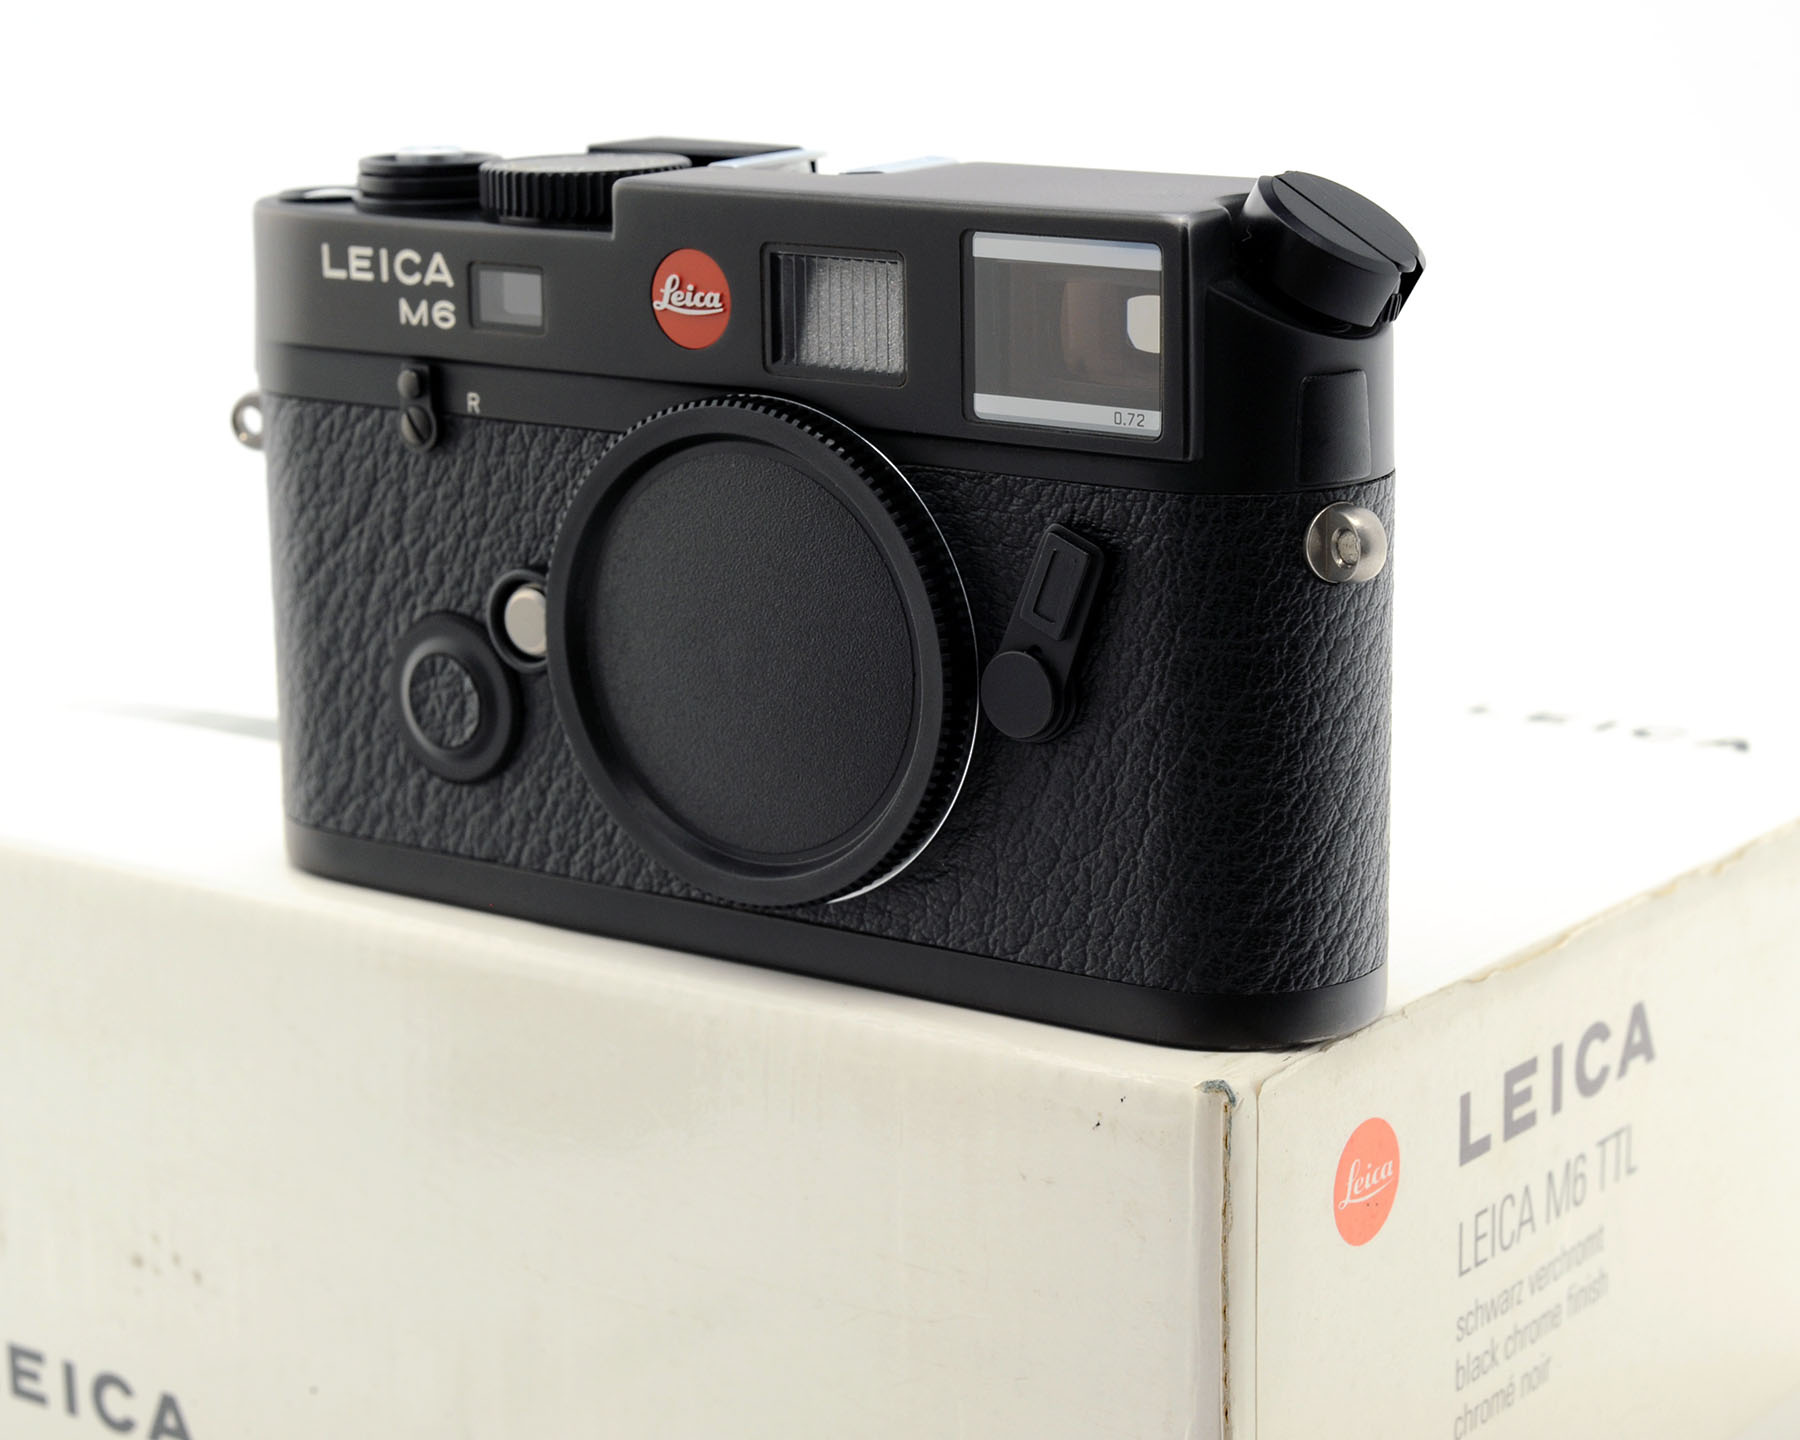 カメラLeica M6 0.72 black - フィルムカメラ